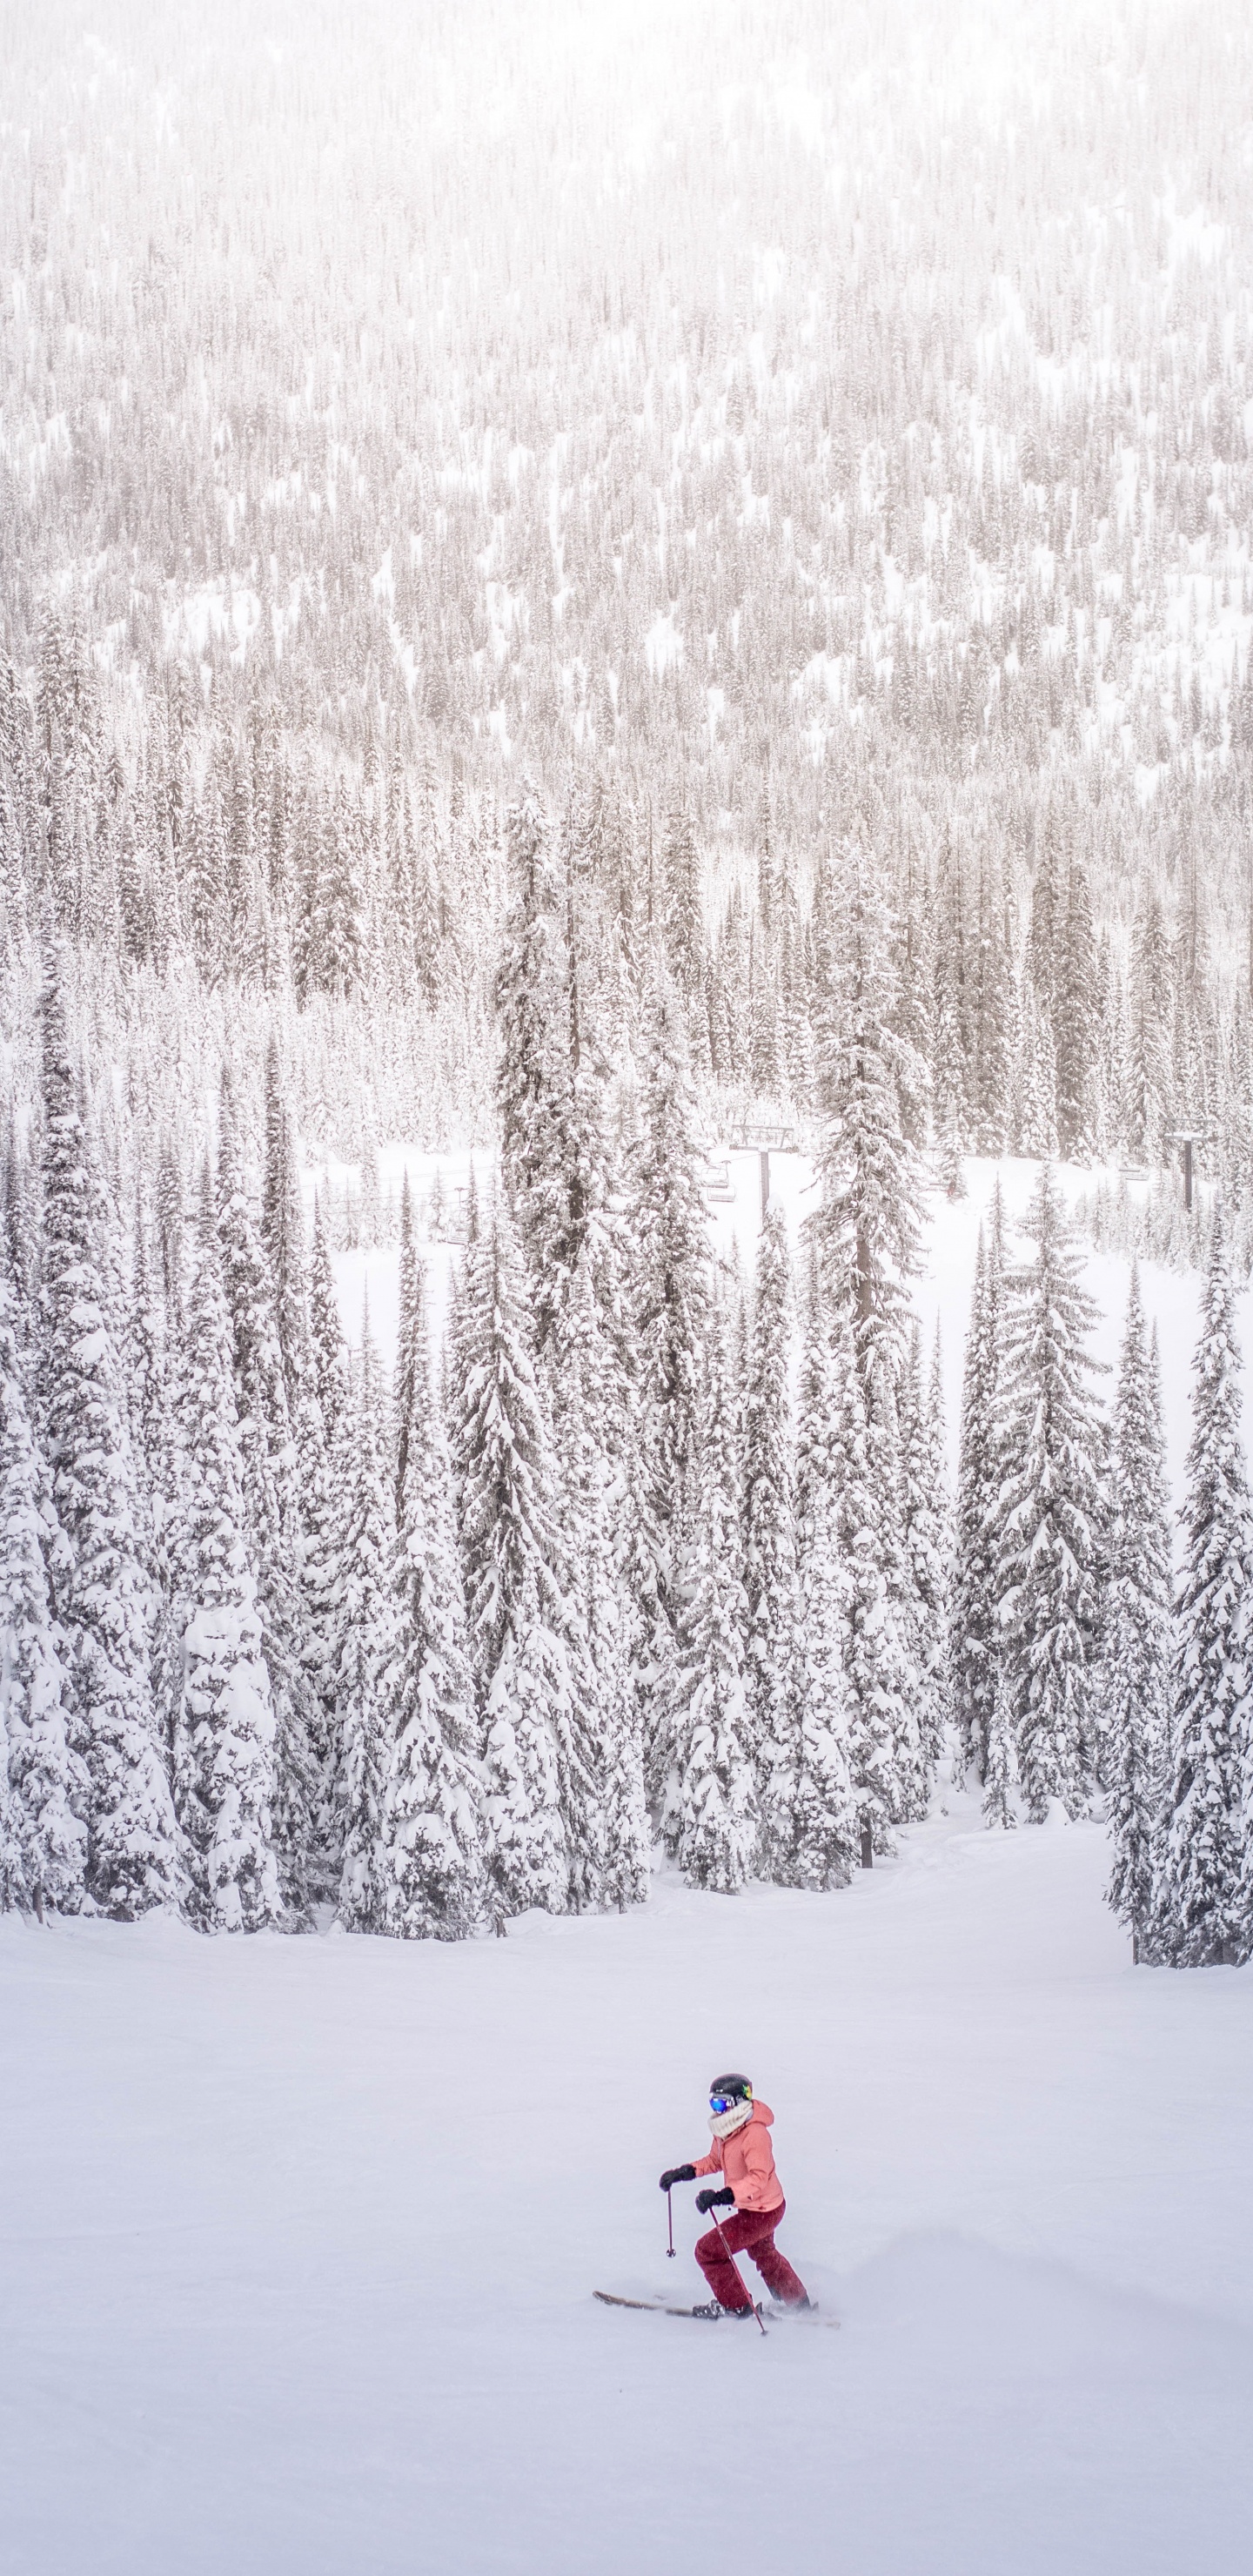 Persona en Chaqueta Roja de Pie Sobre un Suelo Cubierto de Nieve Cerca de Los Árboles Durante el Día. Wallpaper in 1440x2960 Resolution